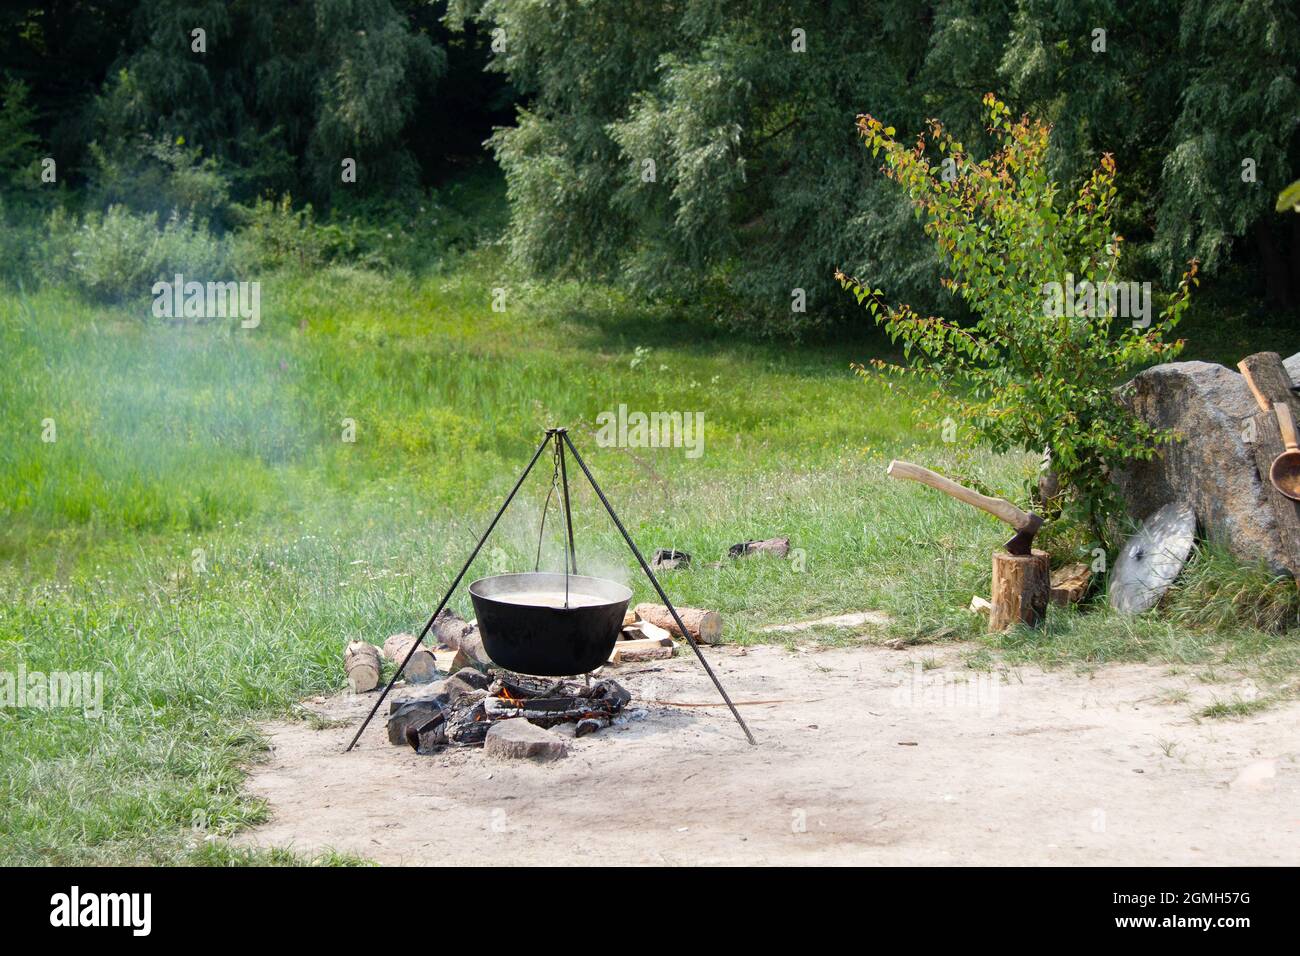 Vieux calfeutrage en fonte sur un feu. Cuisiner des aliments à l'extérieur dans une casserole sur un trépied. Hache dans une souche en bois. Bouclier de chevalier médiéval et louche de cuivre Banque D'Images